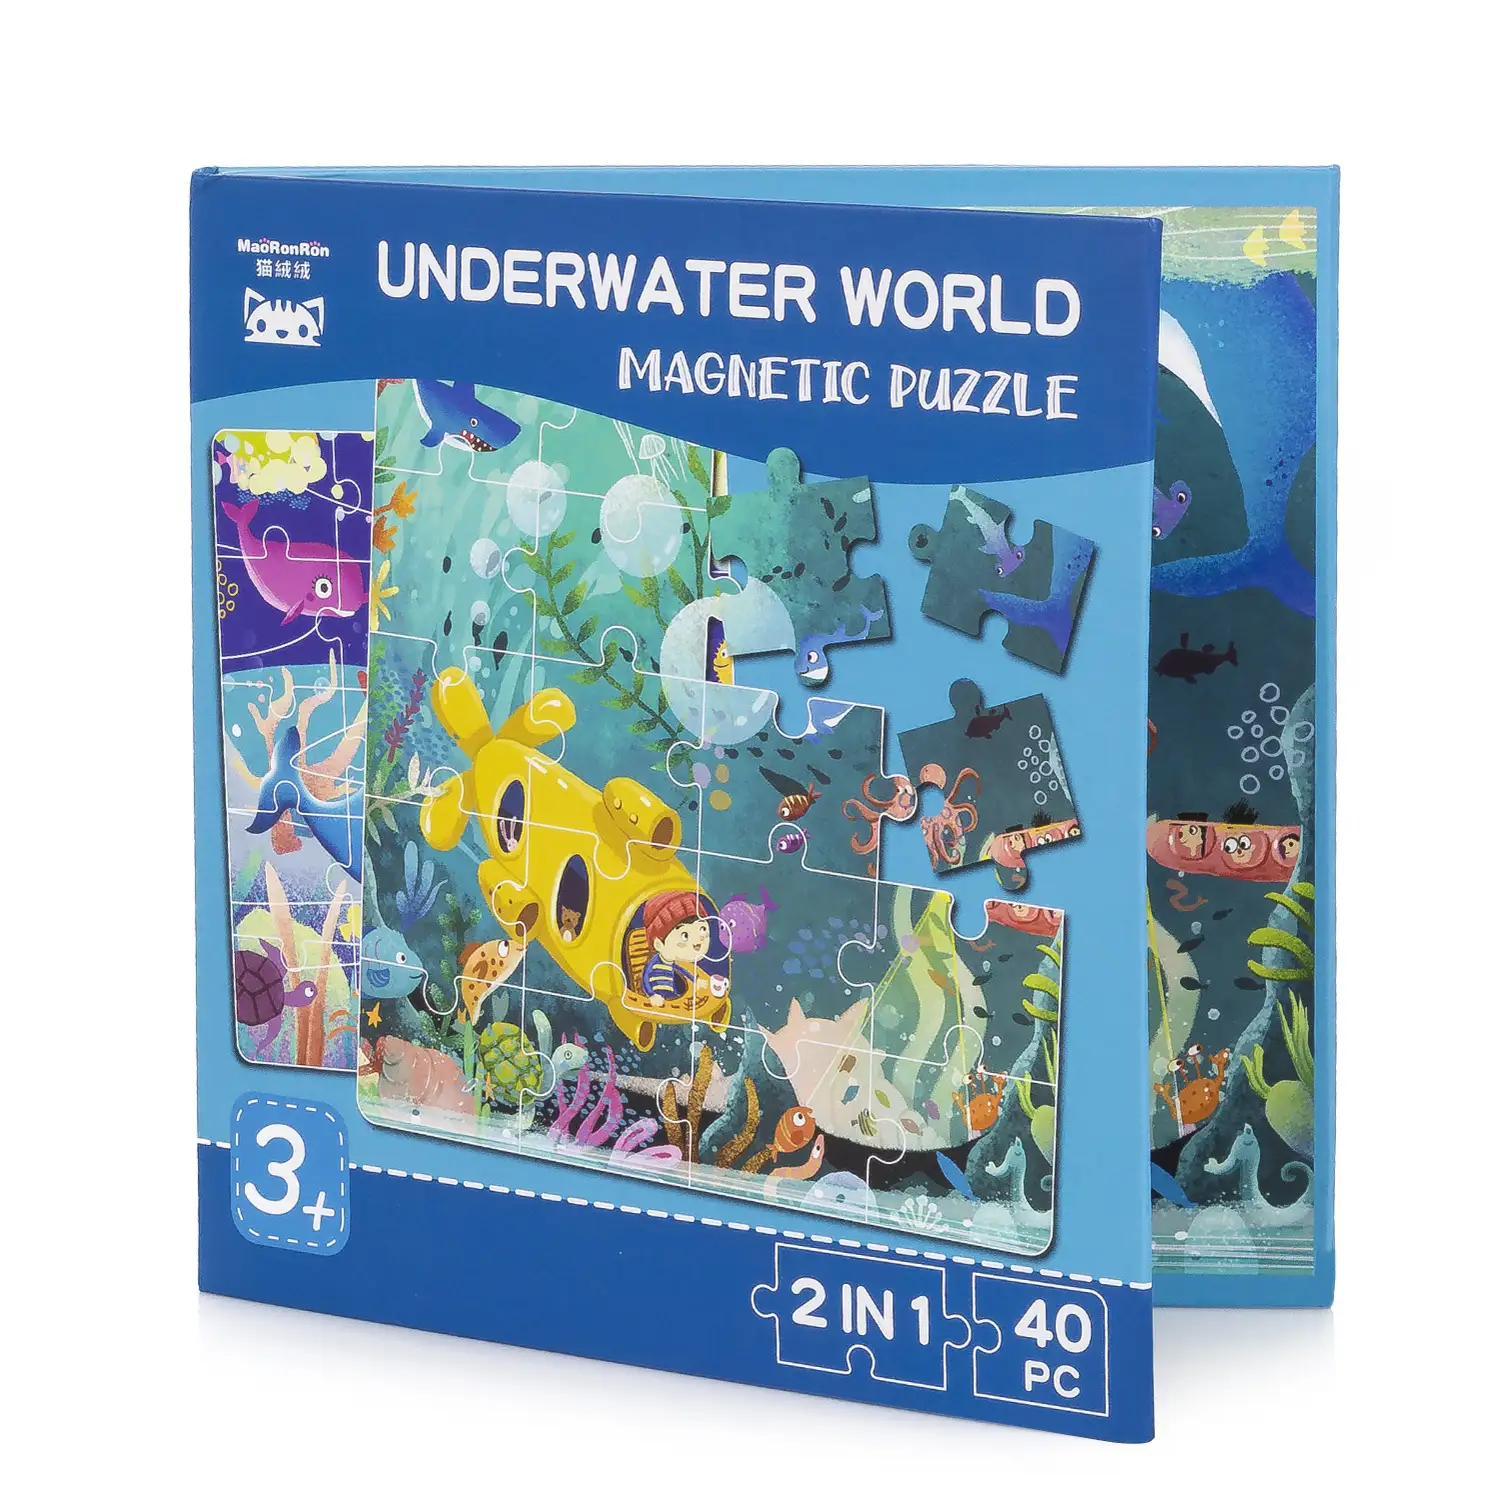 Puzle diseño Mundo Submarino de 40 piezas magnético. Formato tipo libro, 2 puzzles de 20 piezas en 1.